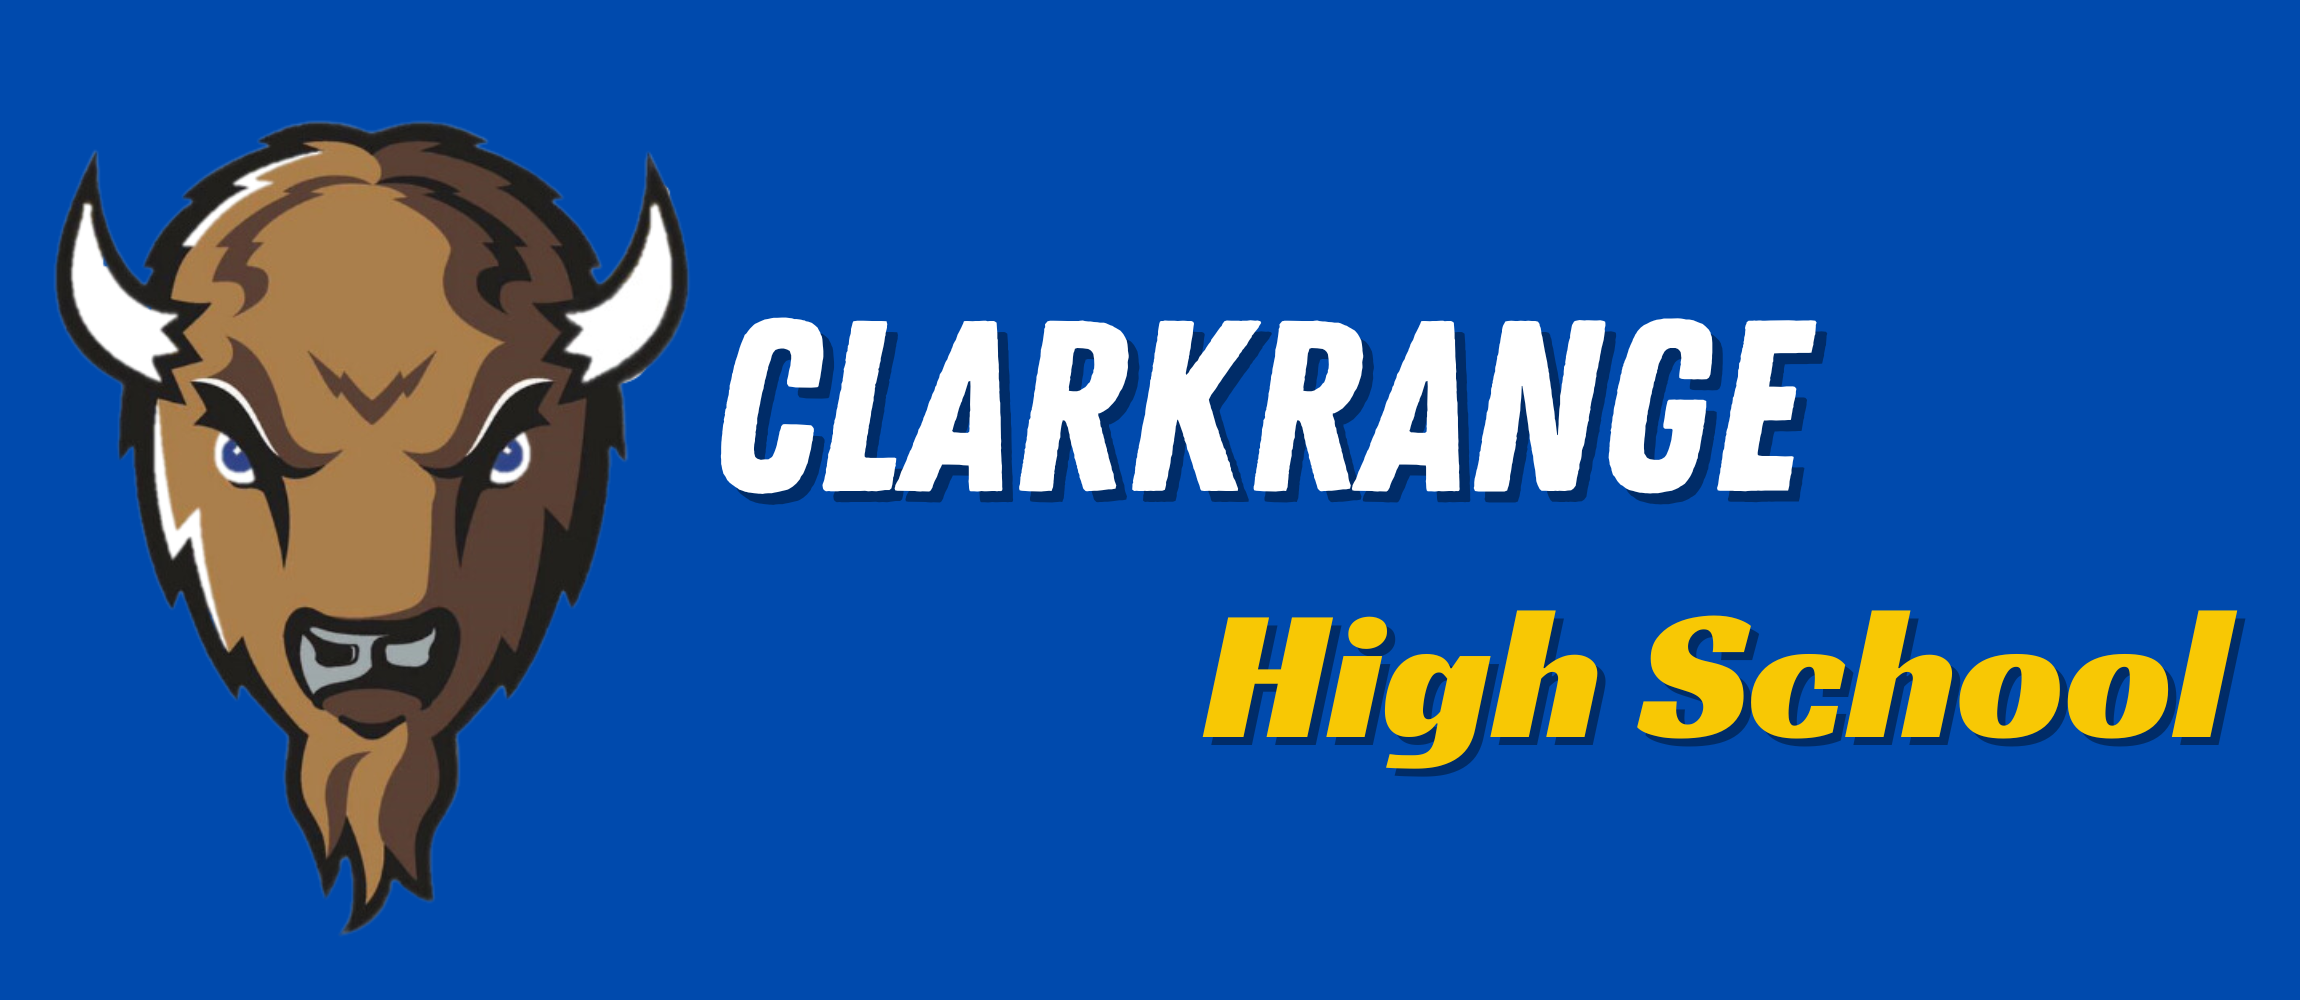 Clarkrange High School